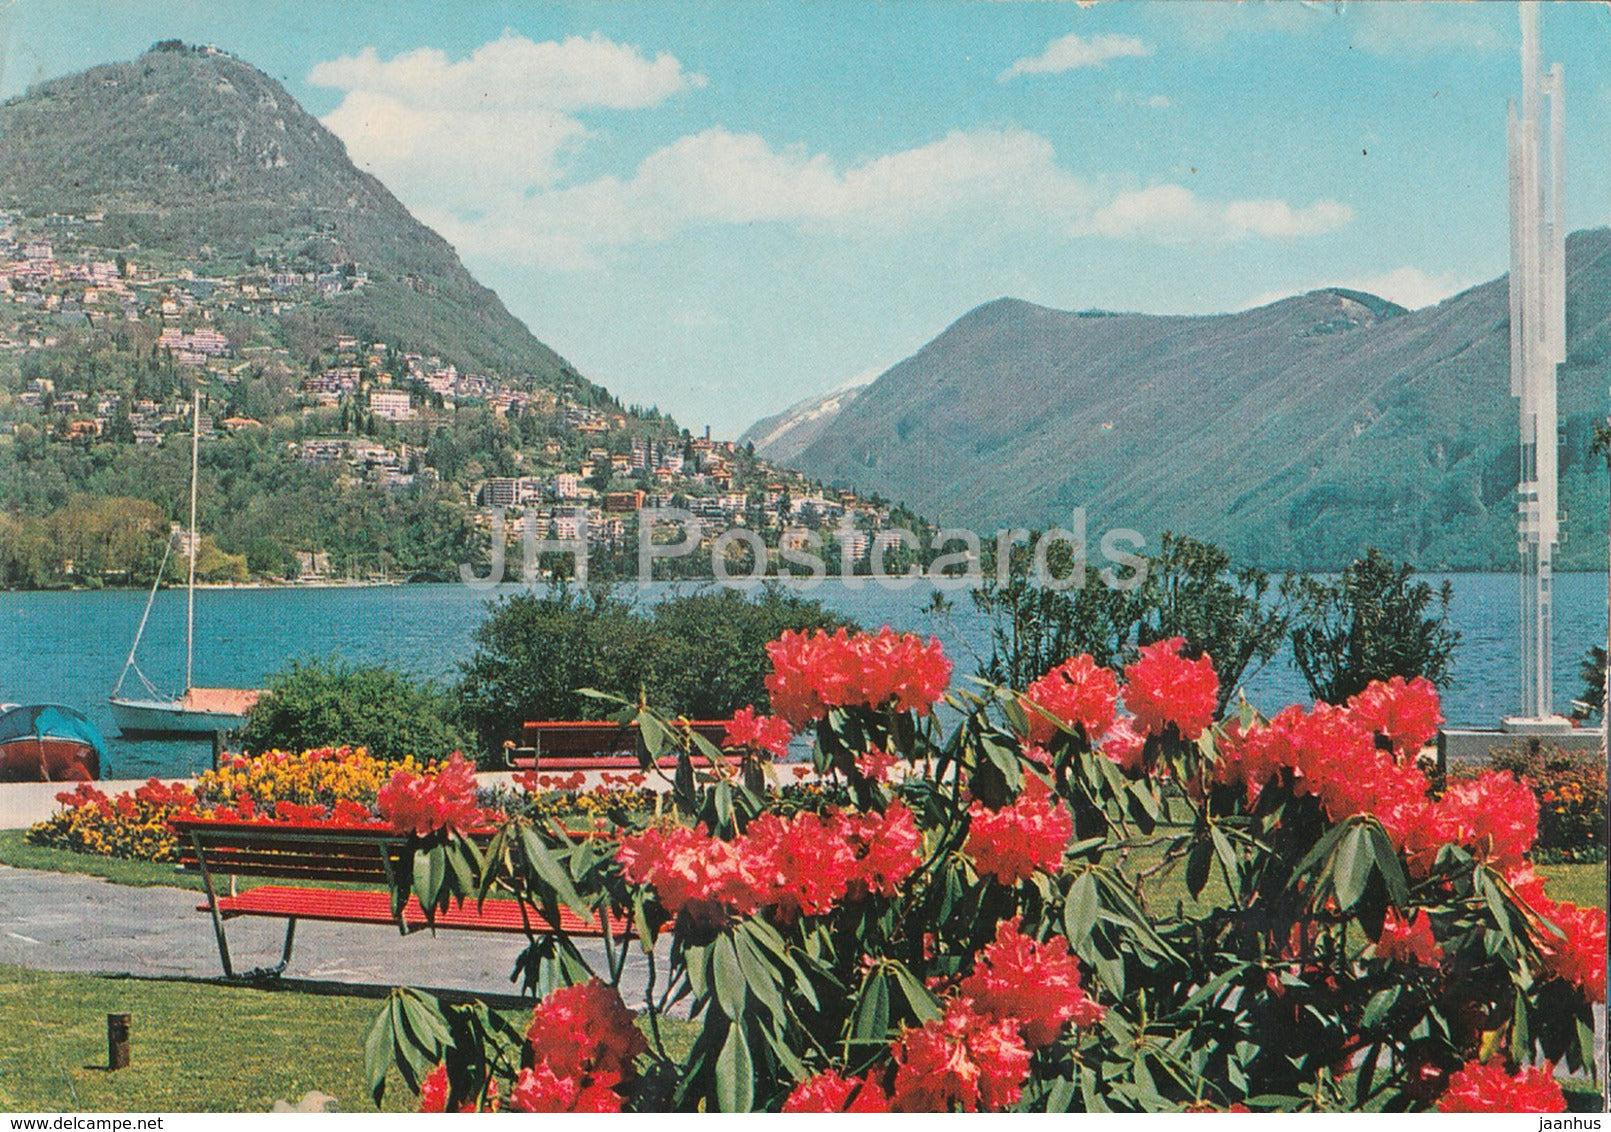 Lugano con il Monte Bre - 82 - 1980 - Switzerland - used - JH Postcards